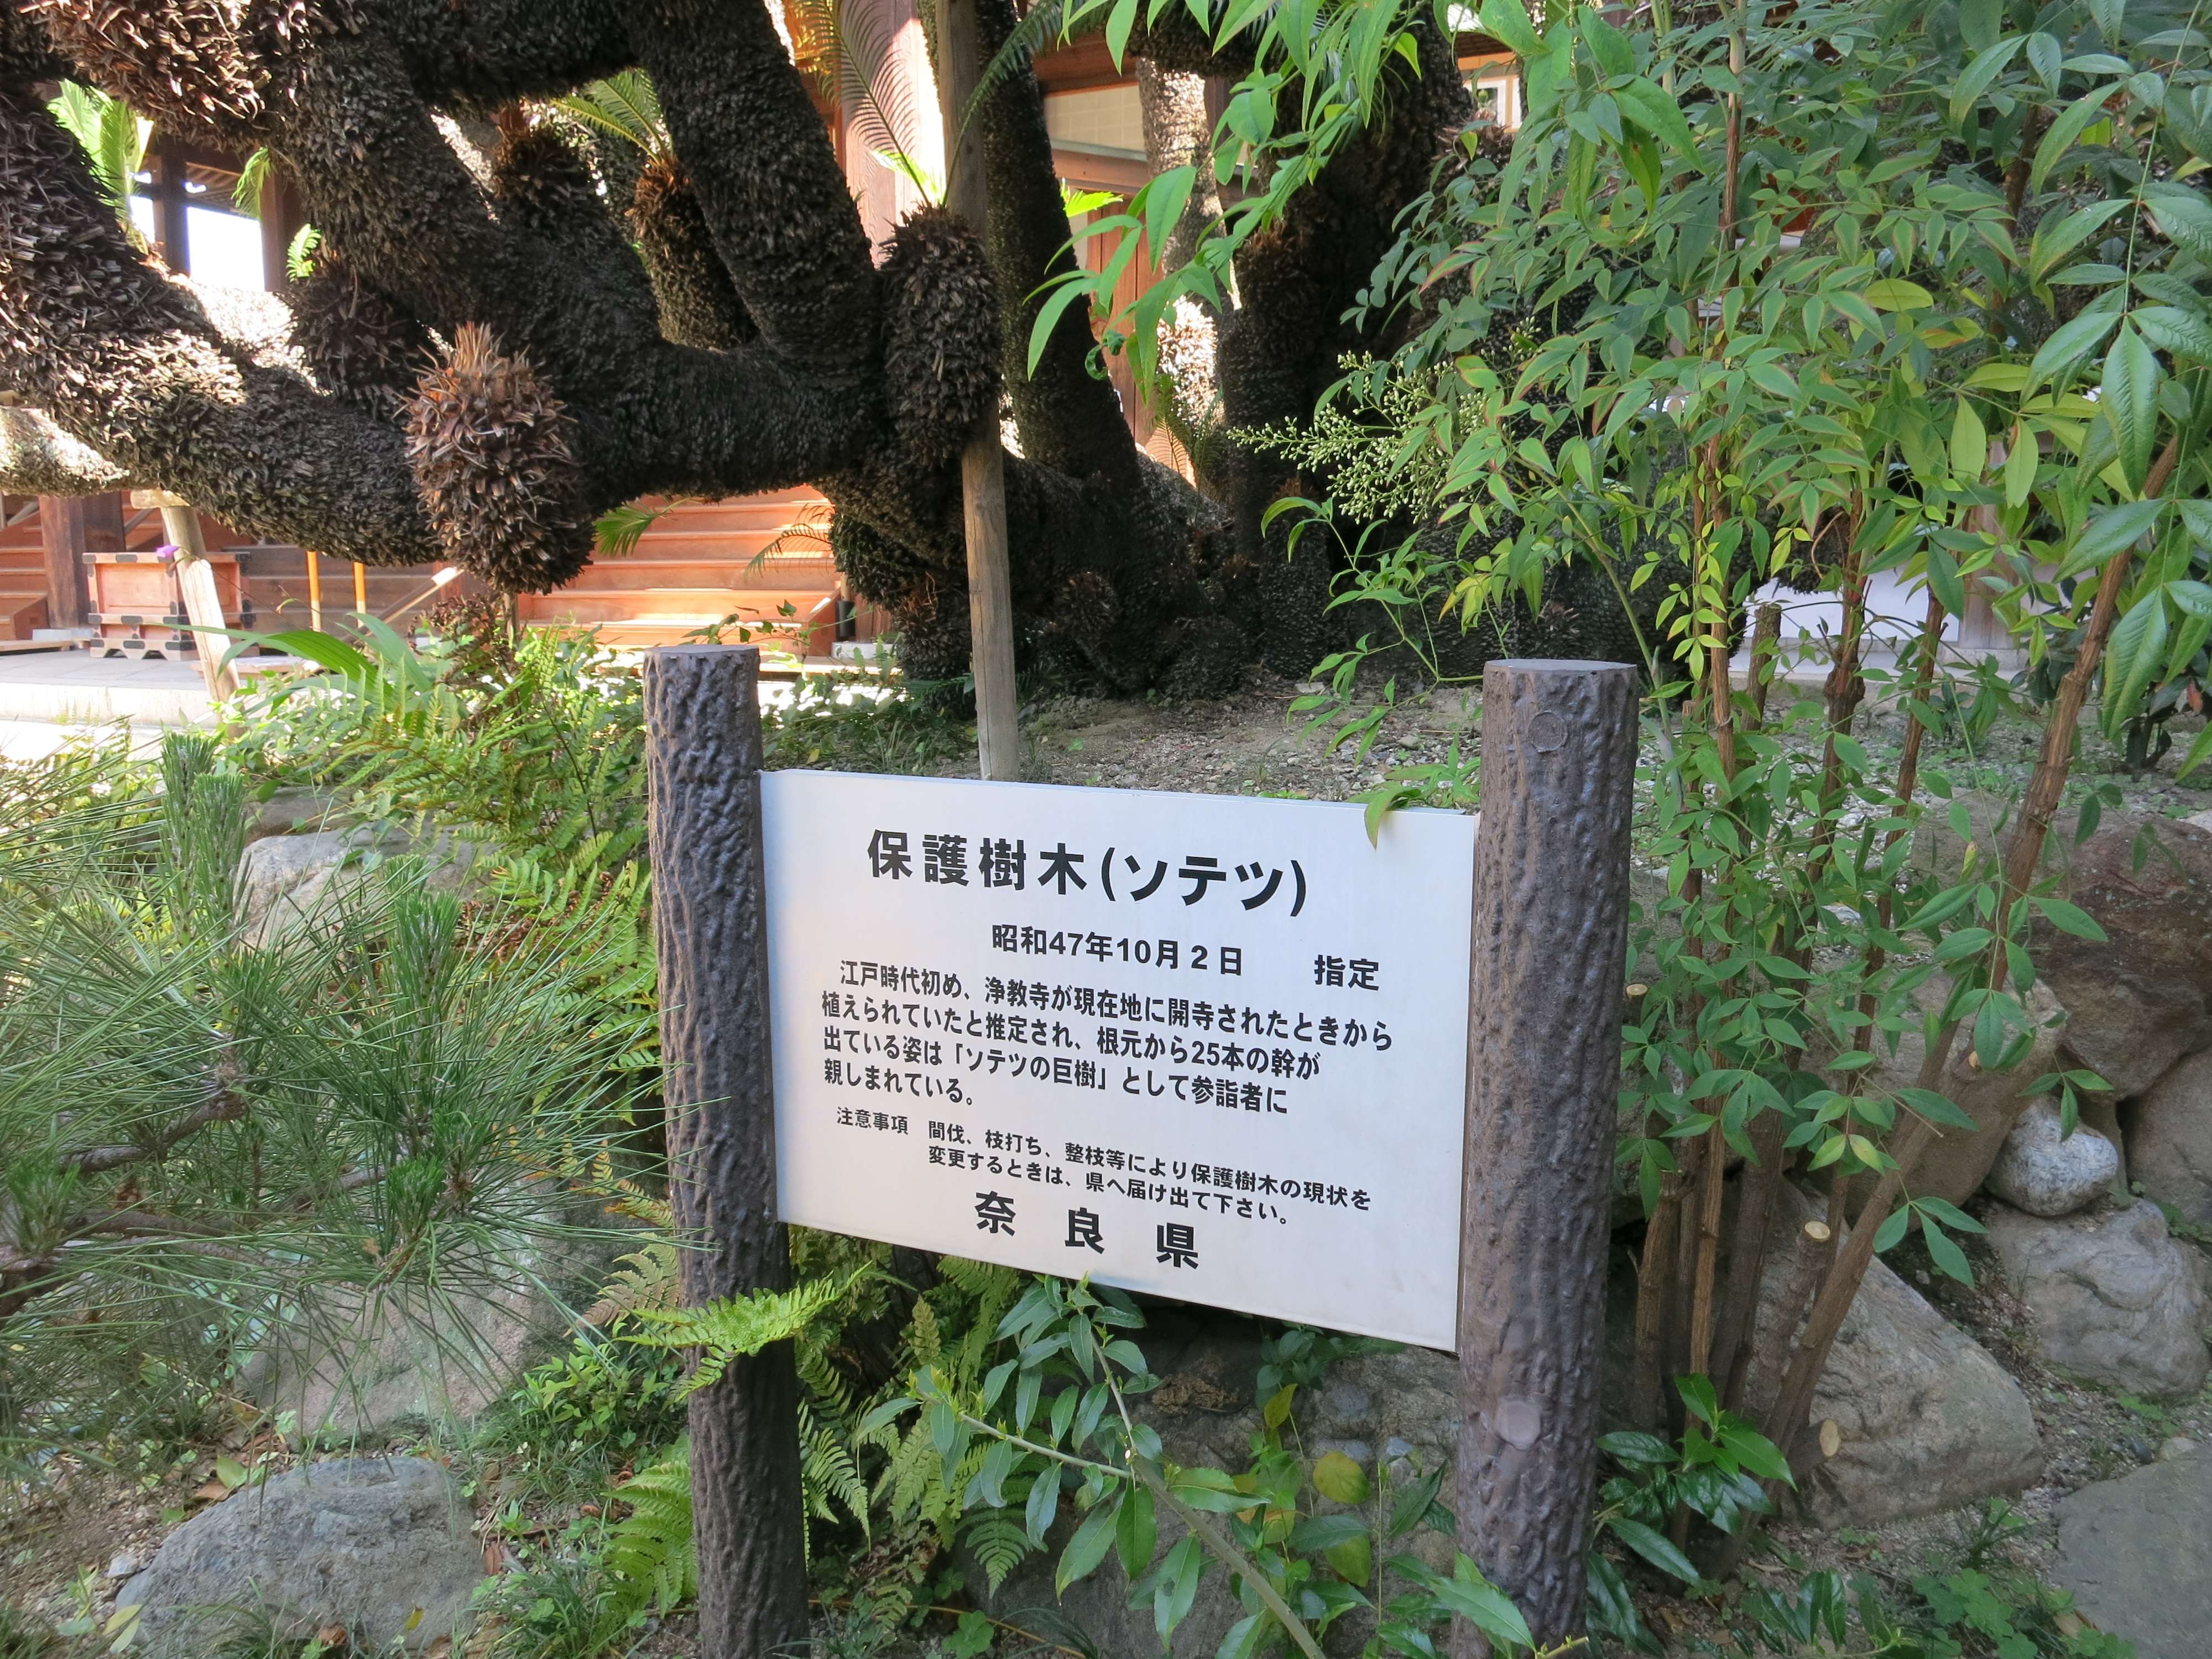 しかも江戸時代初めから植えられていたと推定されるそうです。壮大で歴史ある樹木は必見ですね。